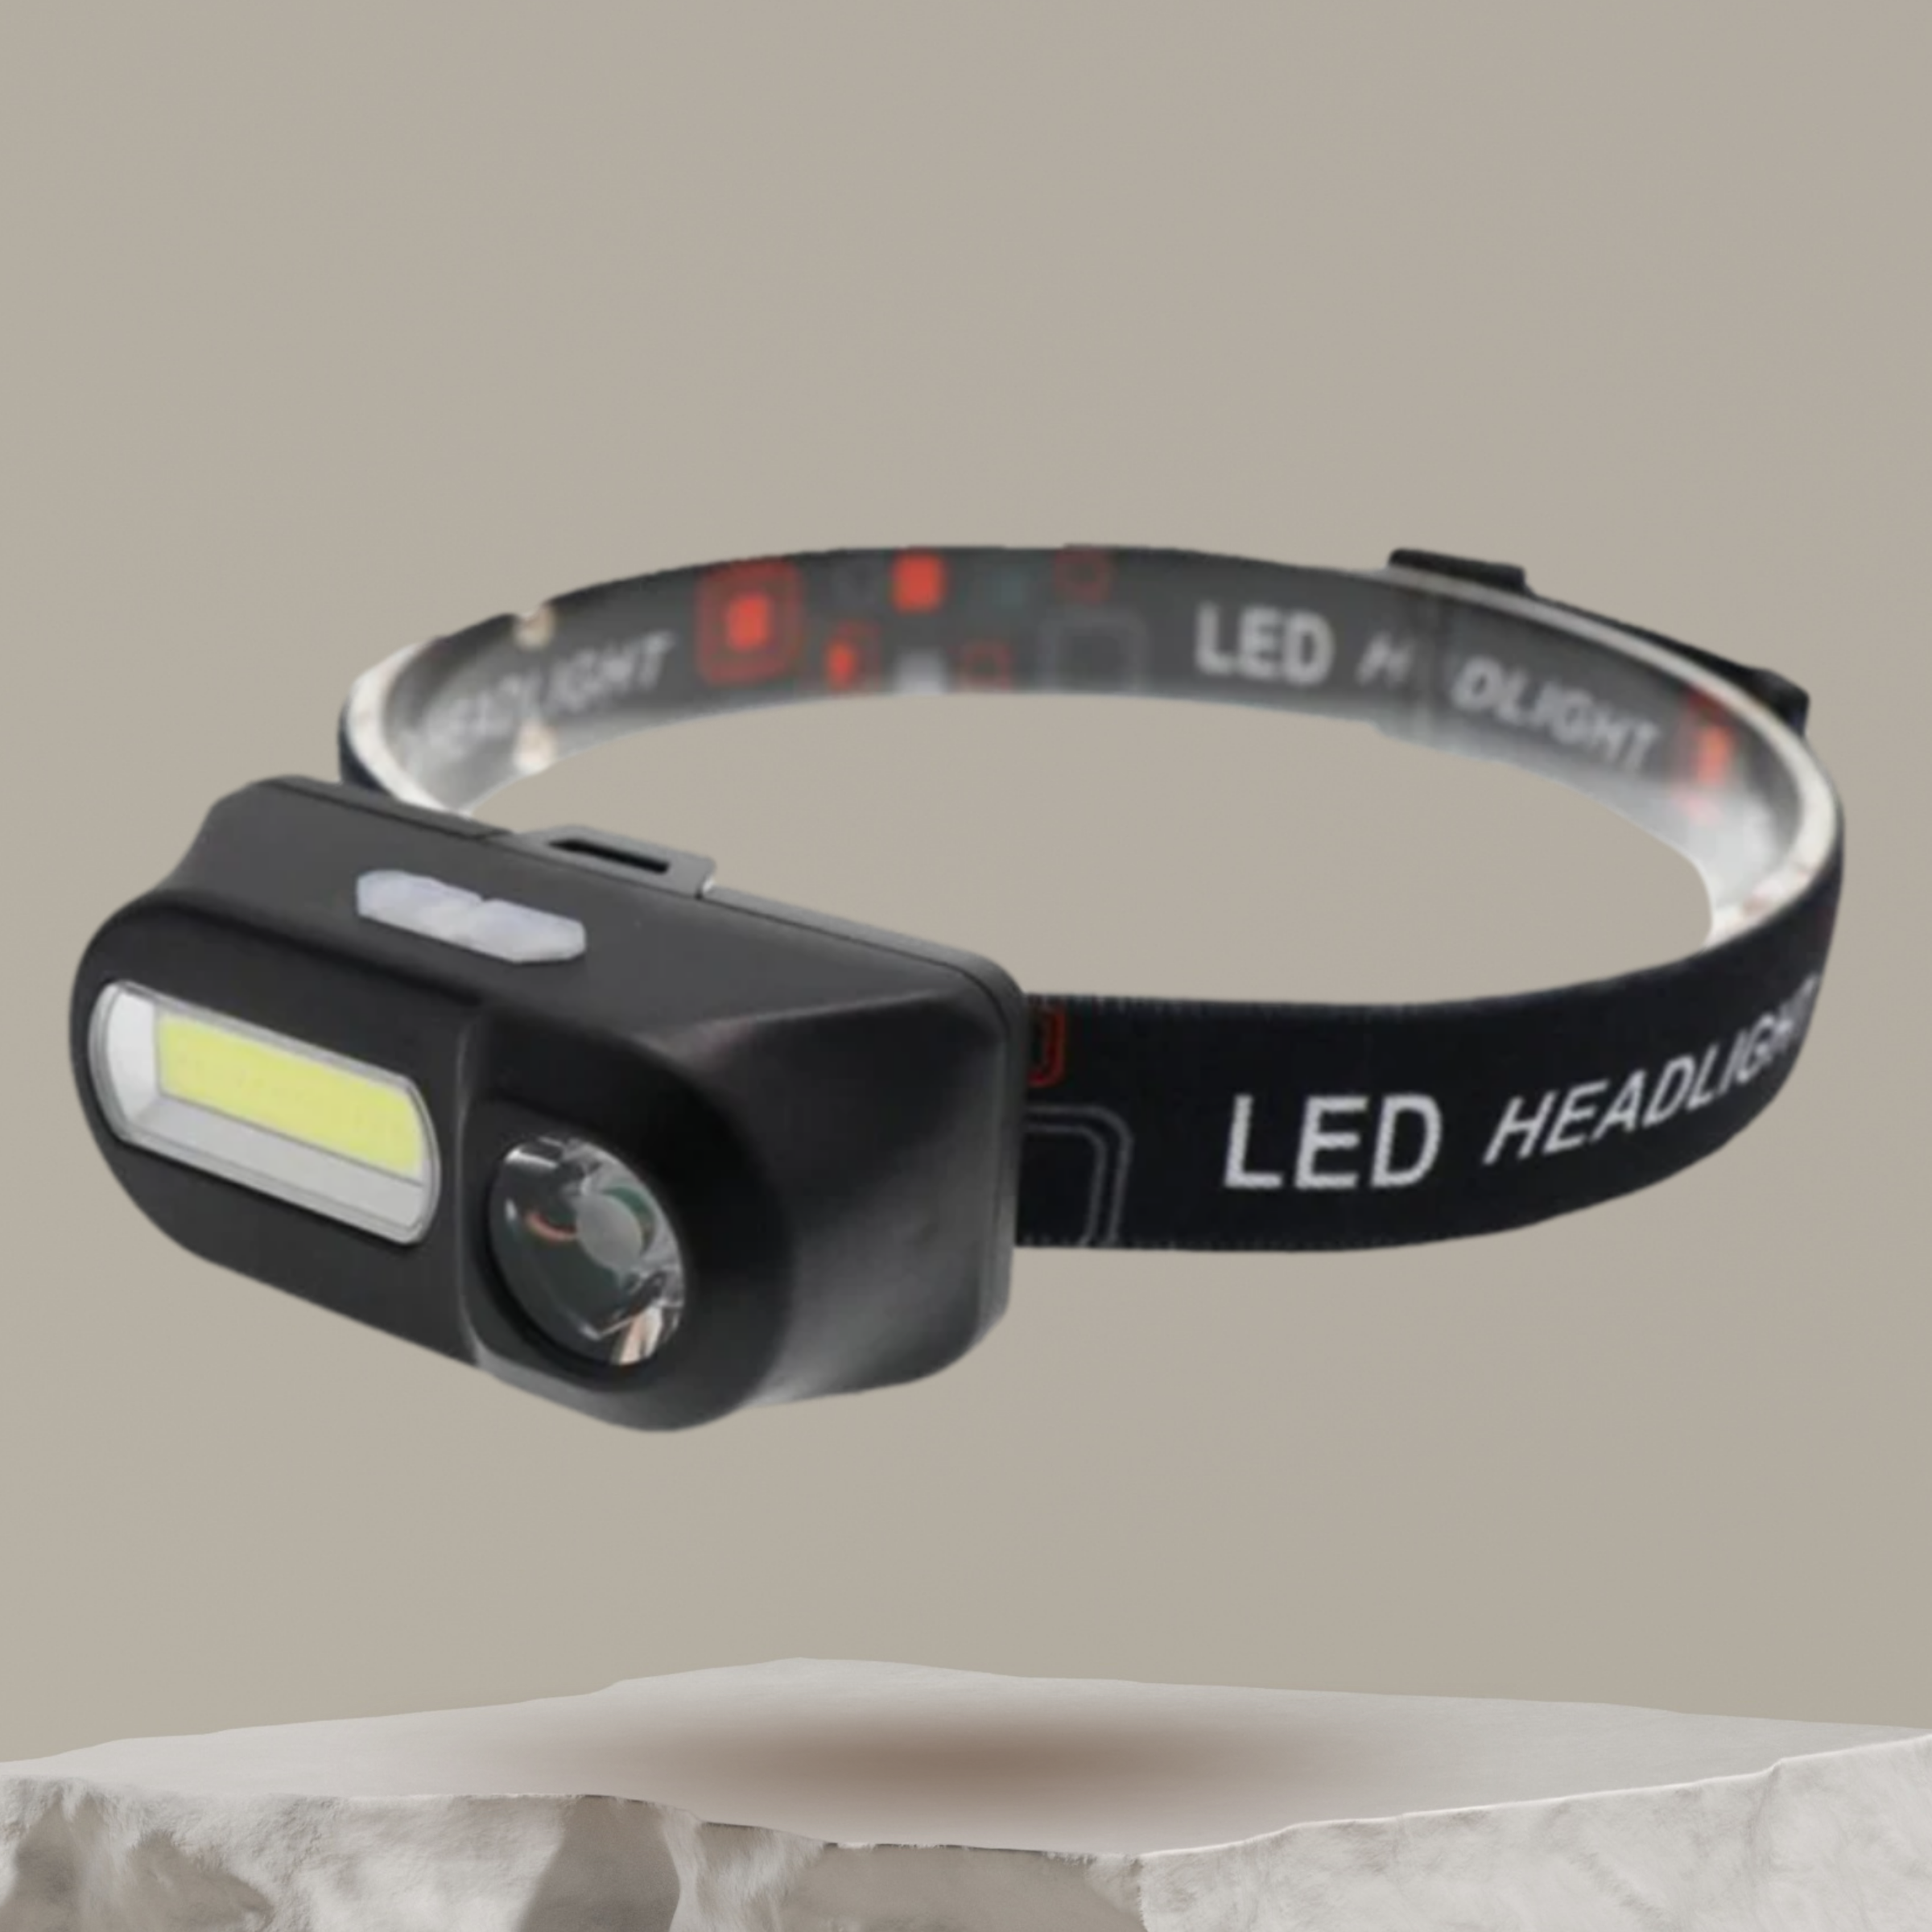 Lampe frontale LED rechargeable USB puissante, lampe frontale led de  détection de gestes pour cyclisme, camping, randonnée, bricolage, course de  nuit